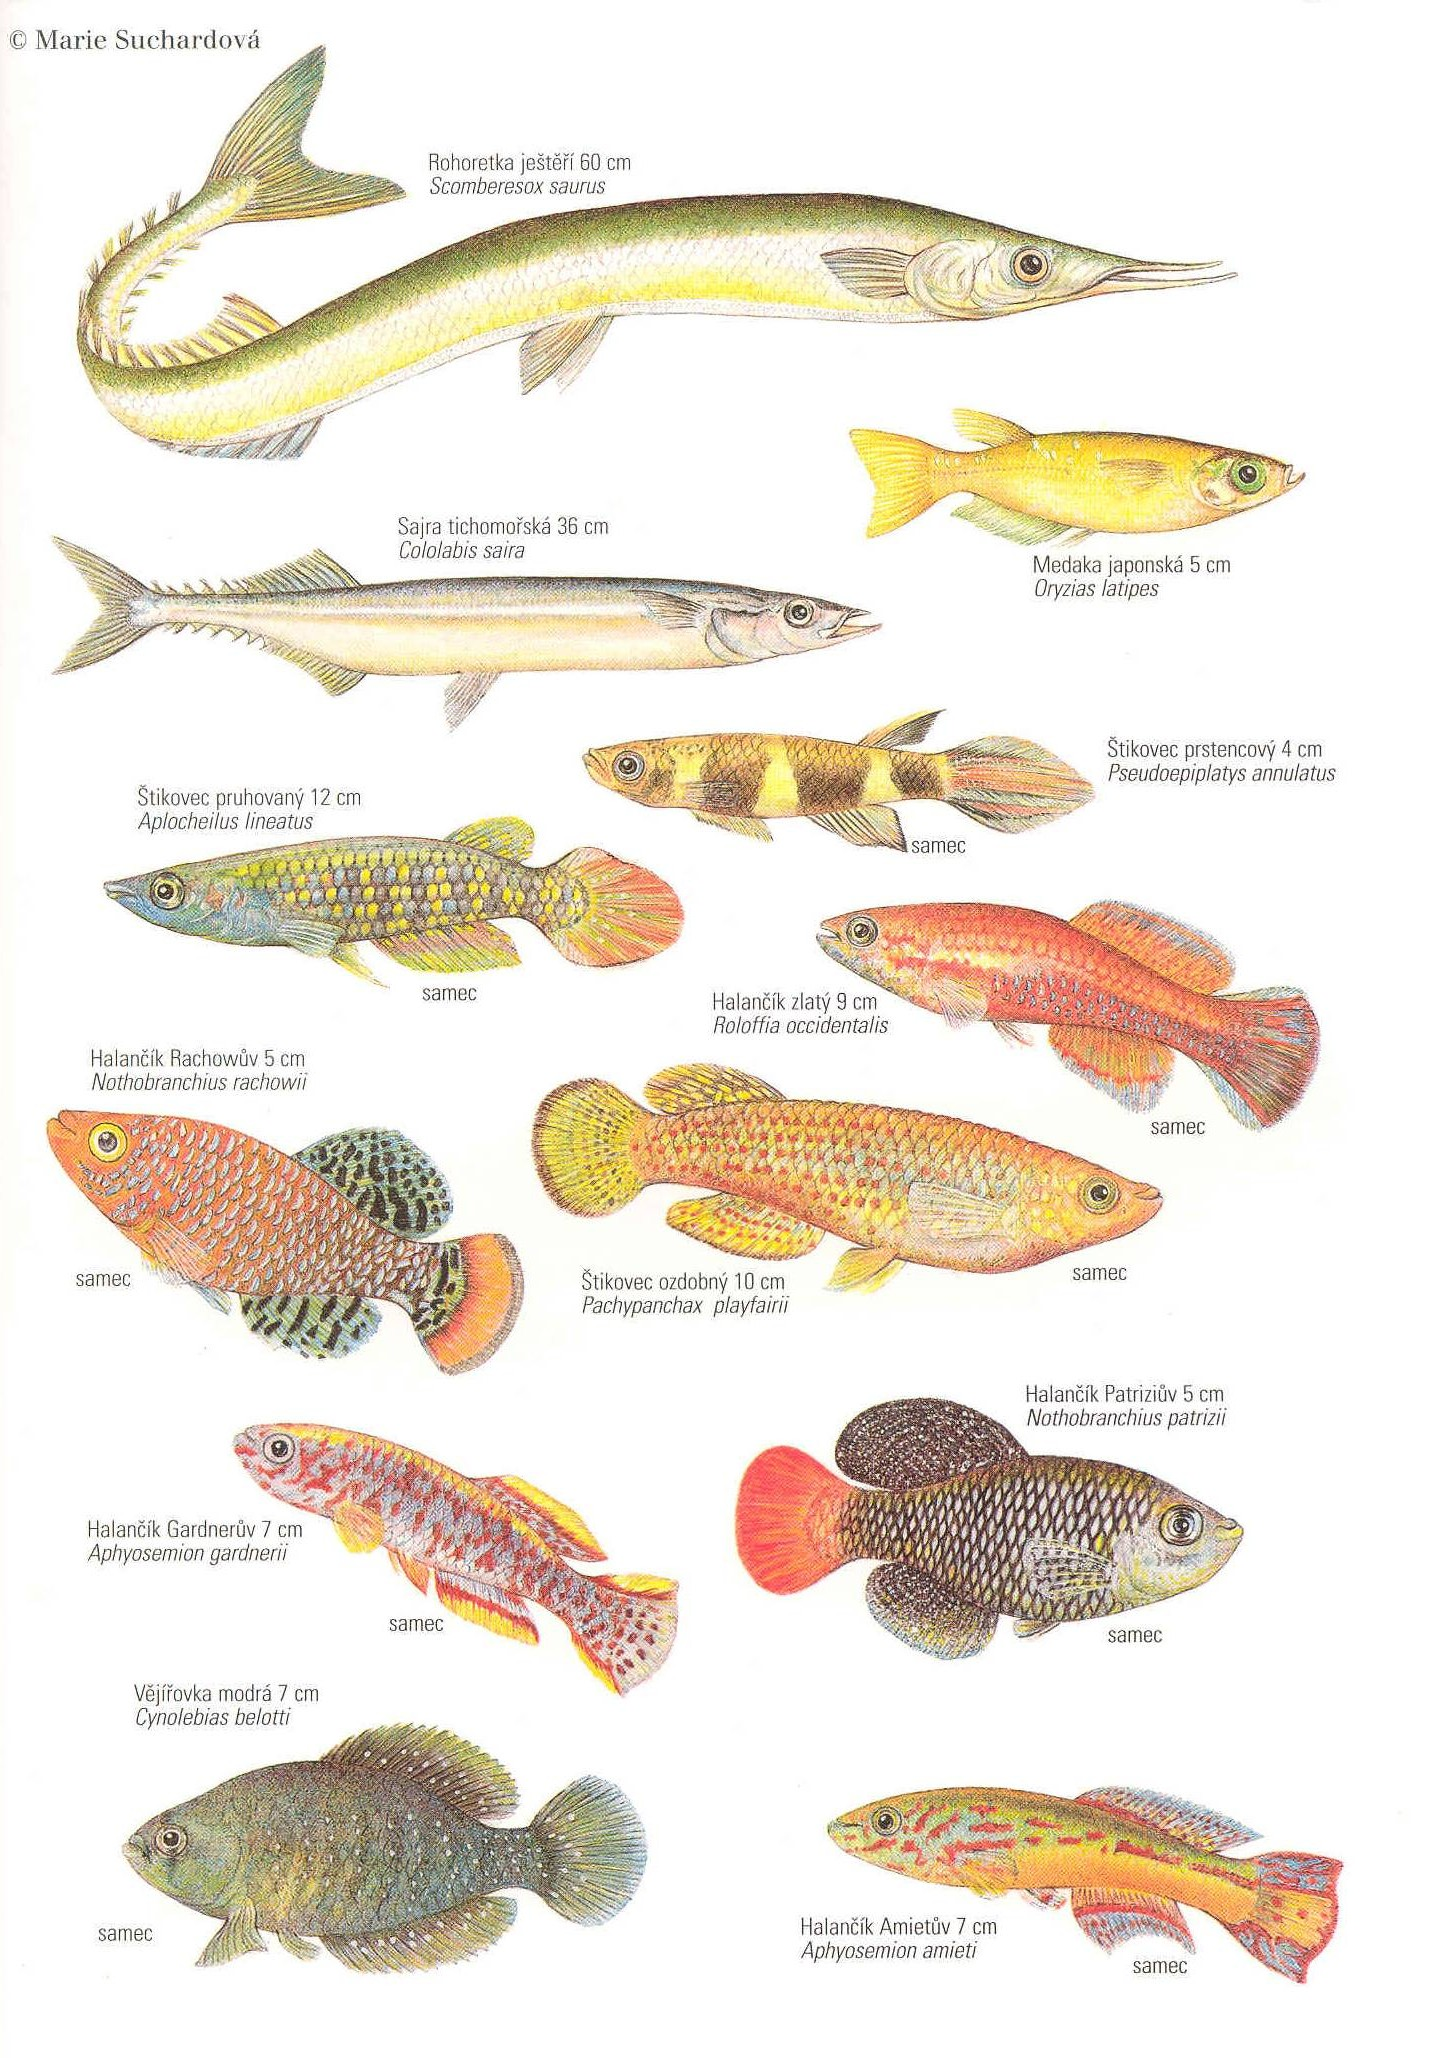 Řád: HALANČÍKOVCI Cyprinodontiformes drobné rybky, cykloidní (ktenoidní) šupiny, pohlavní dimorfismus, hlavně sladkovodní HALANČÍKOVITÍ Aplocheilidae Jikry často vysychají se substrátem, krátkověcí